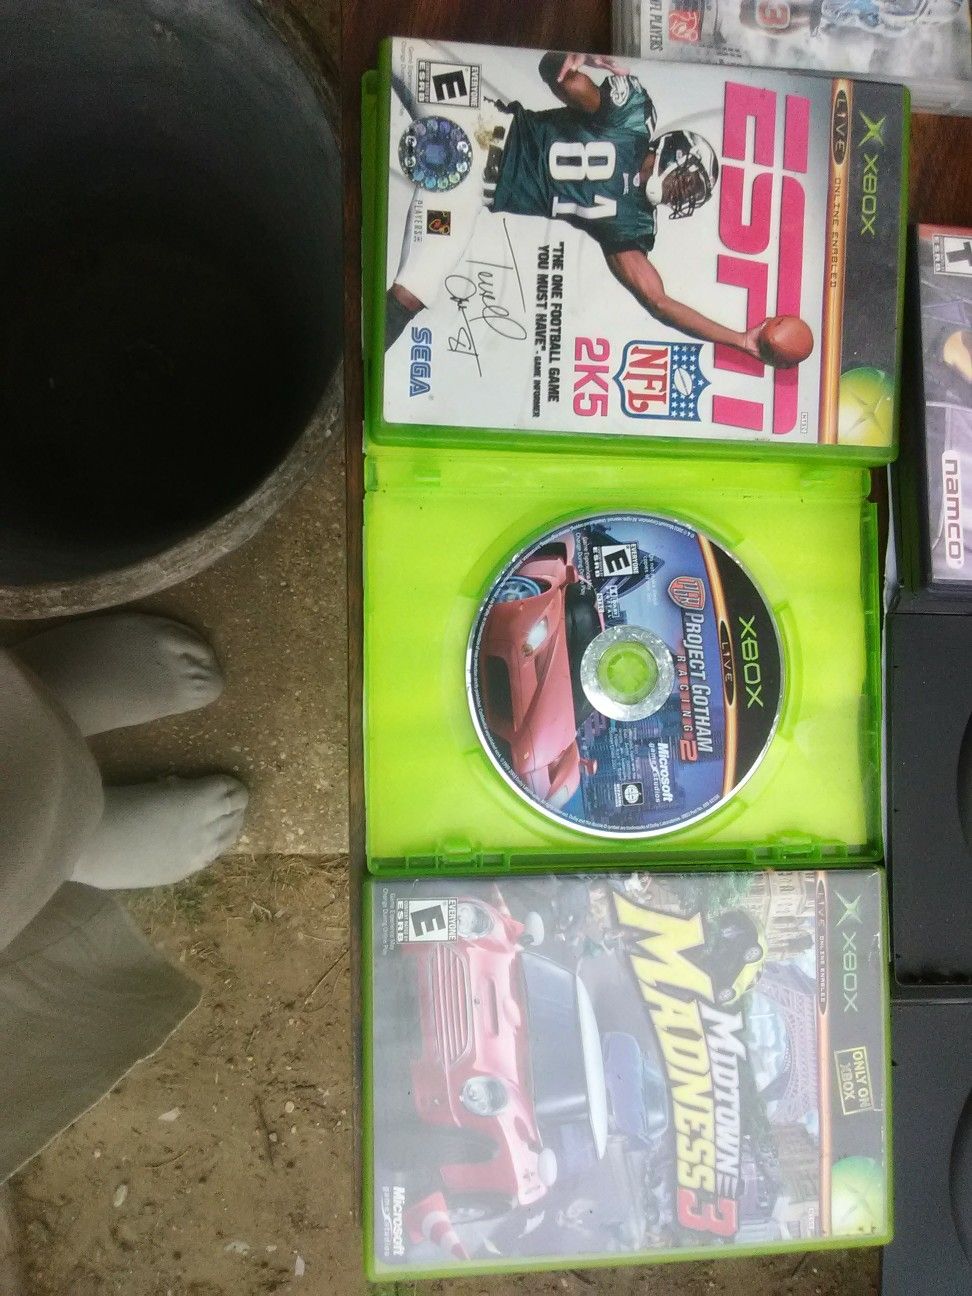 3 original Xbox games bundle